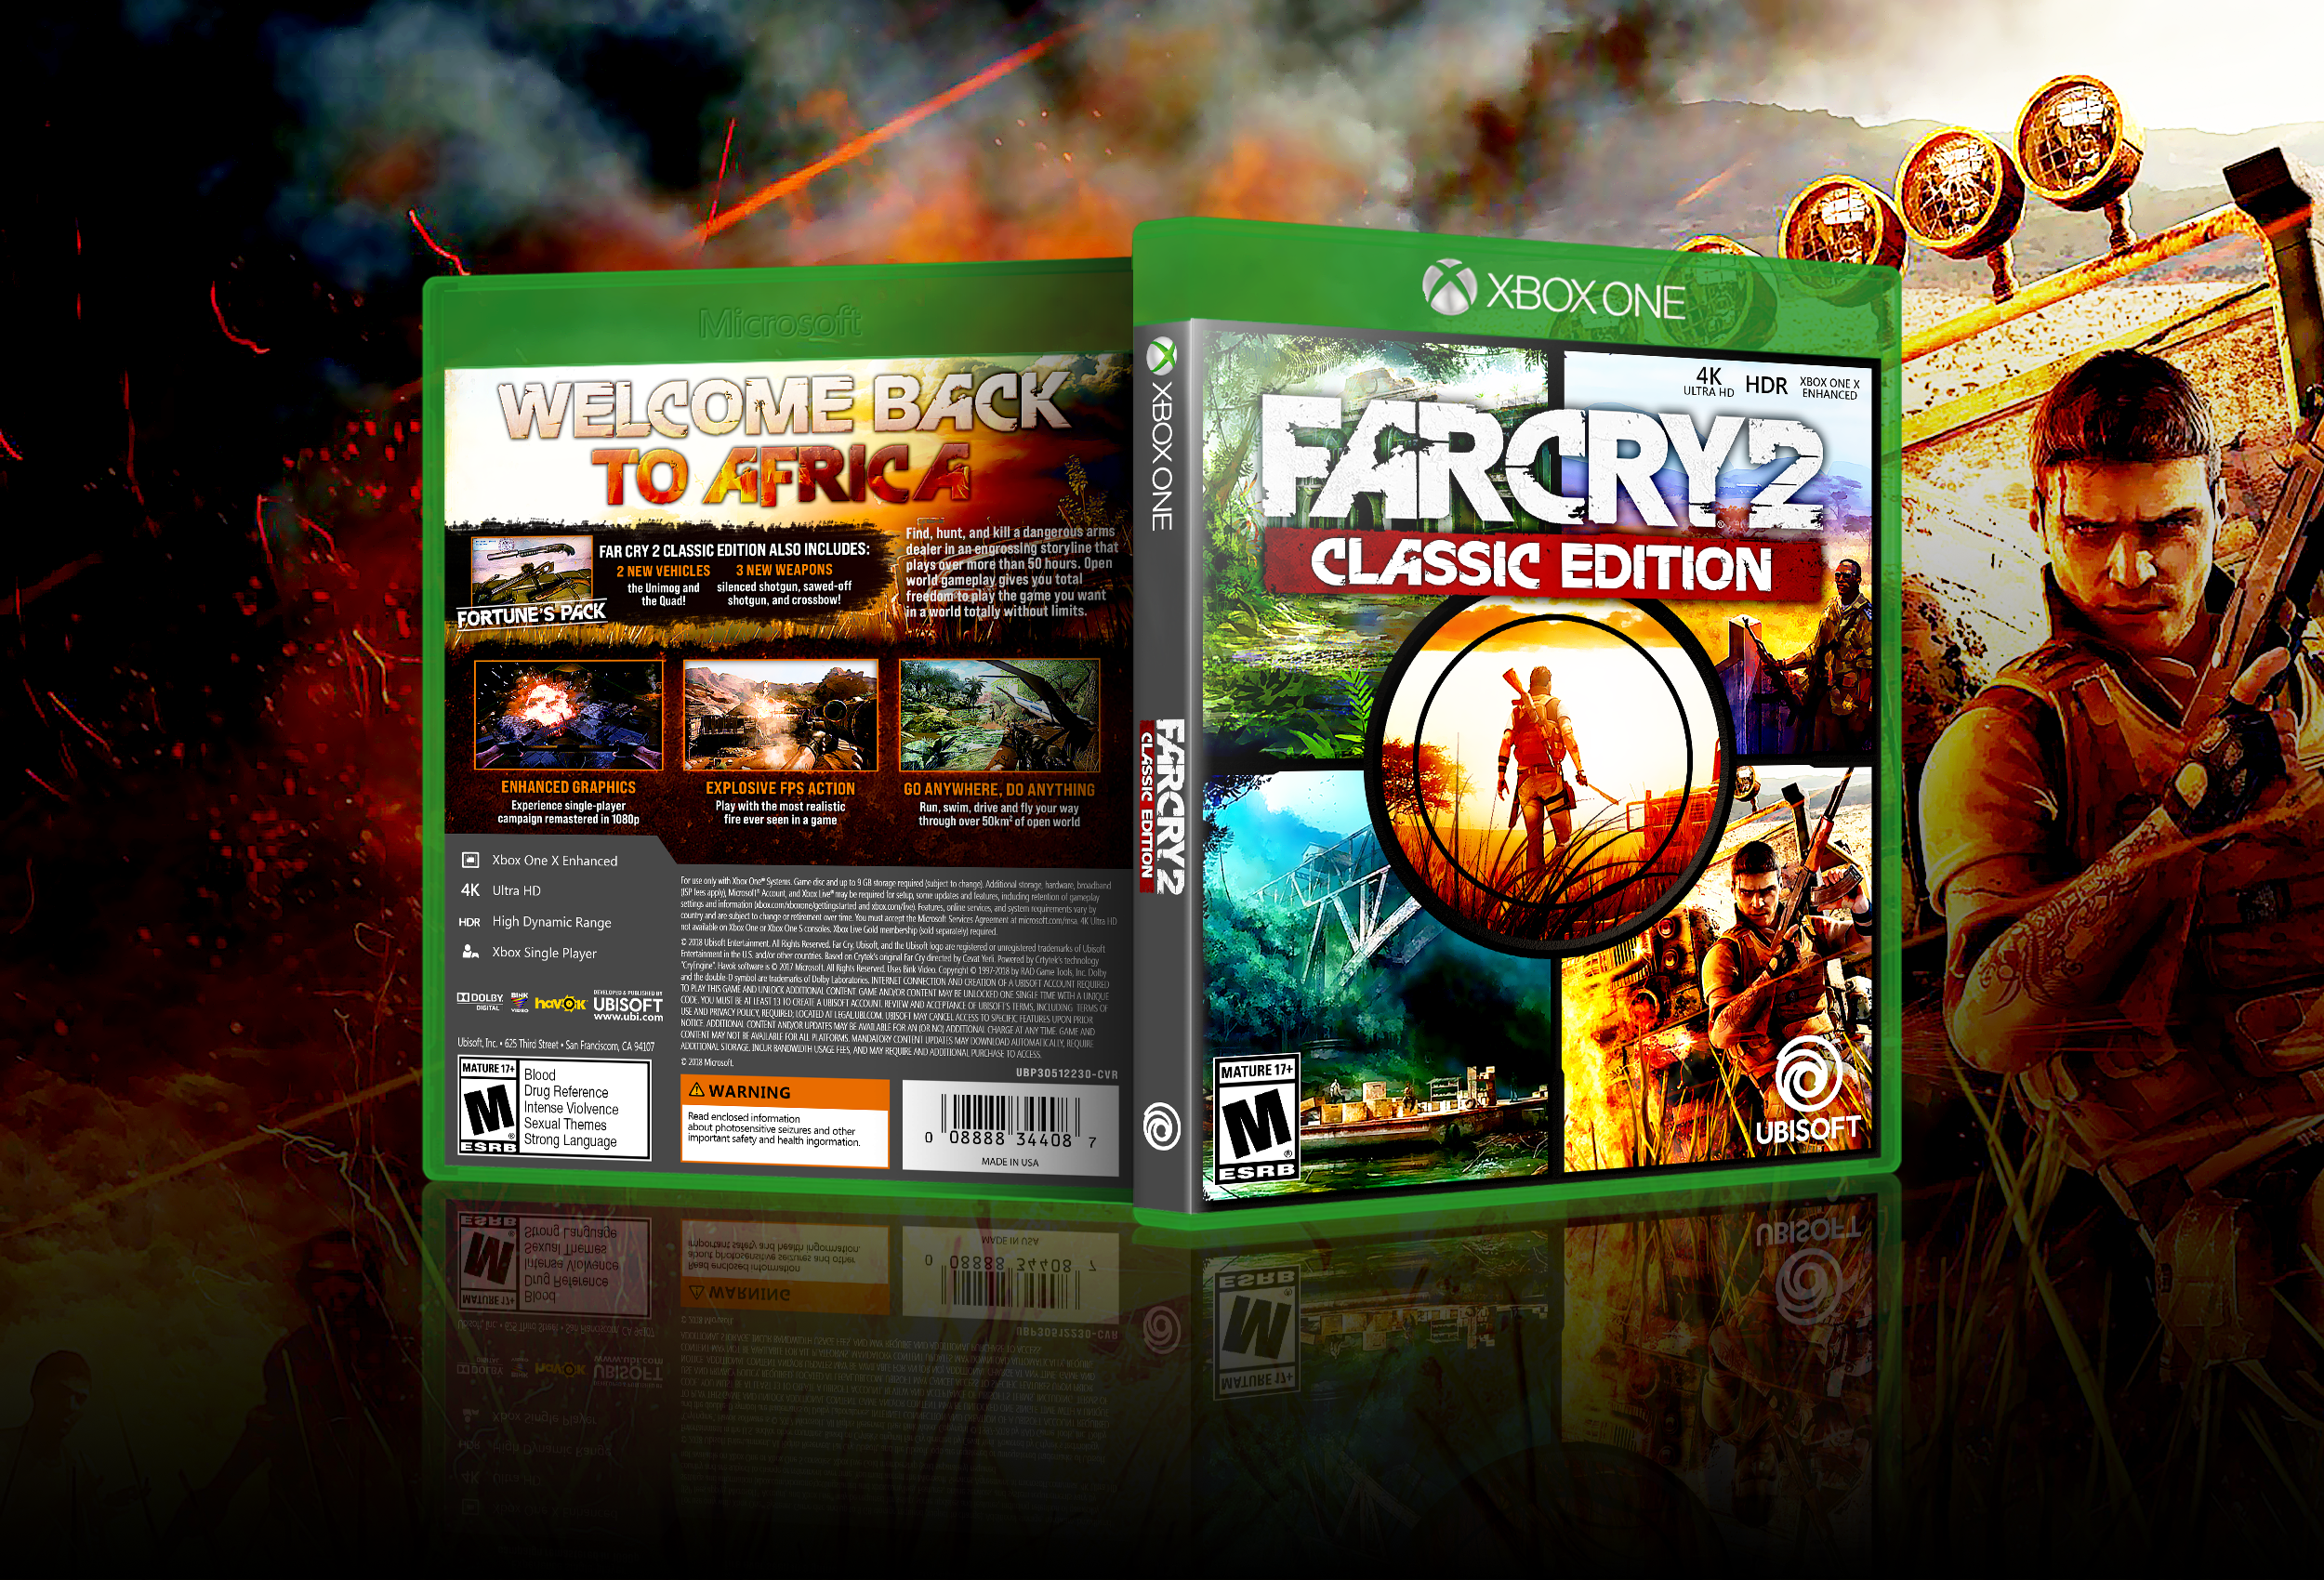 FarCry 2: Classic Edition box cover